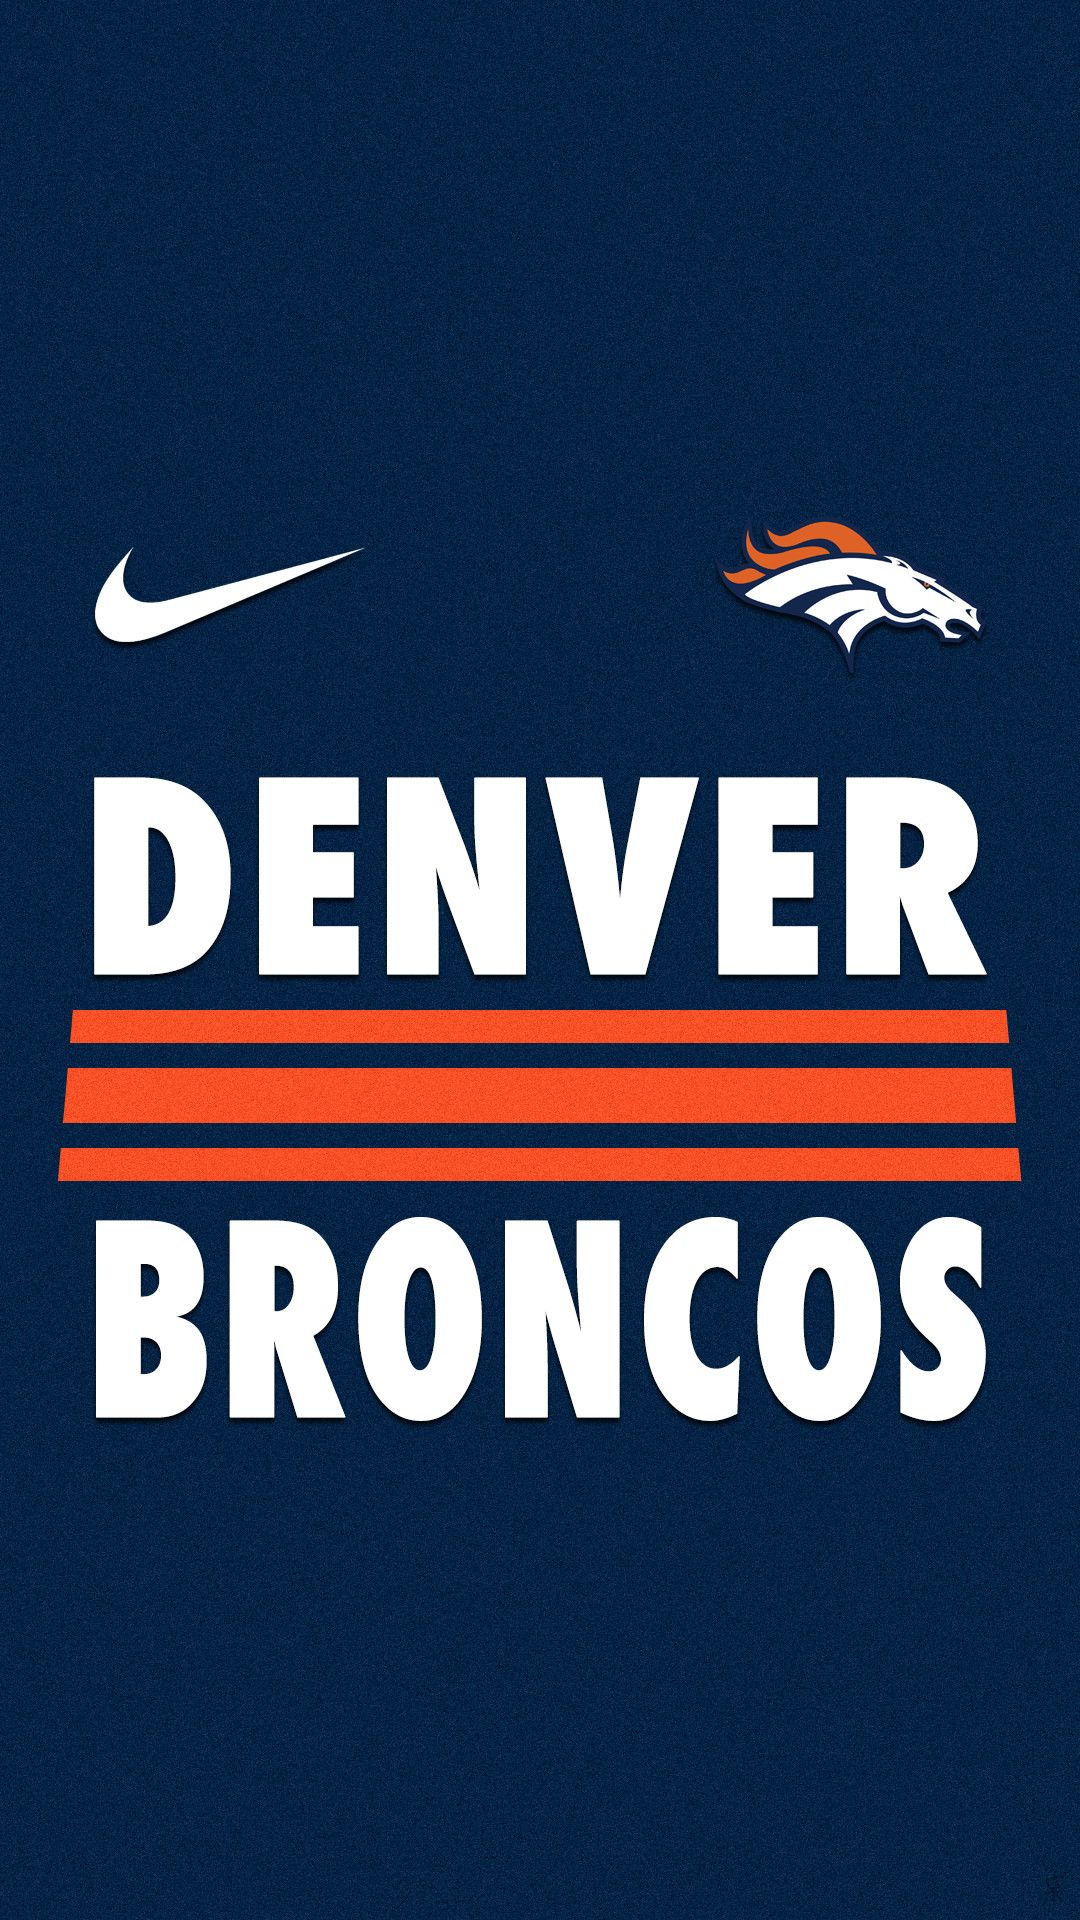 Denver Broncos Wallpaper Top Background